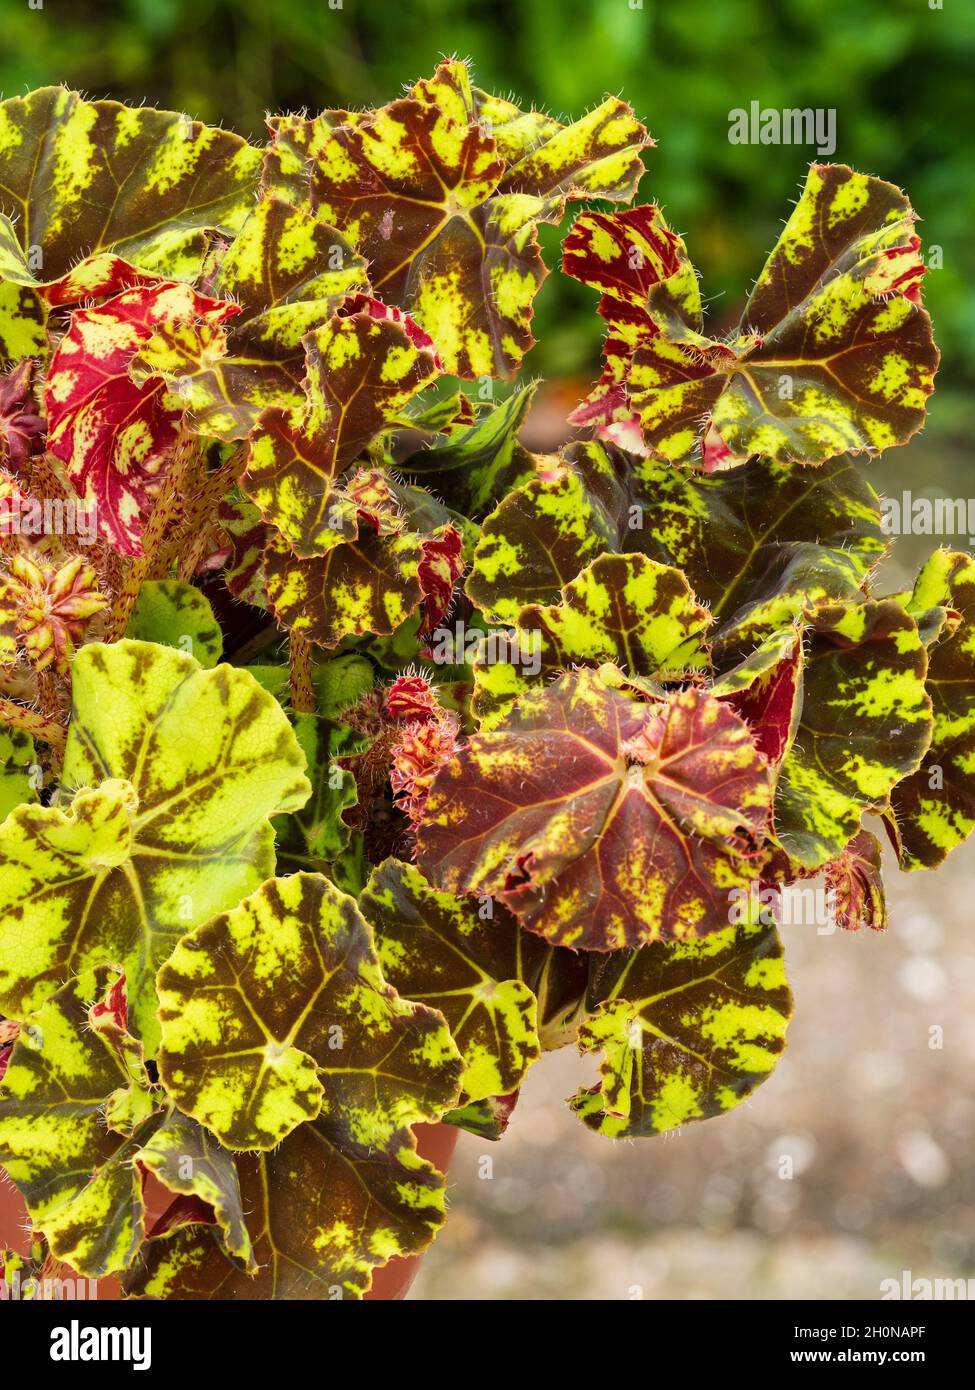 Fogliame giallo e marrone a motivi geometrici del tipo di capanno rex begonia, Begonia 'Zumba' Foto Stock